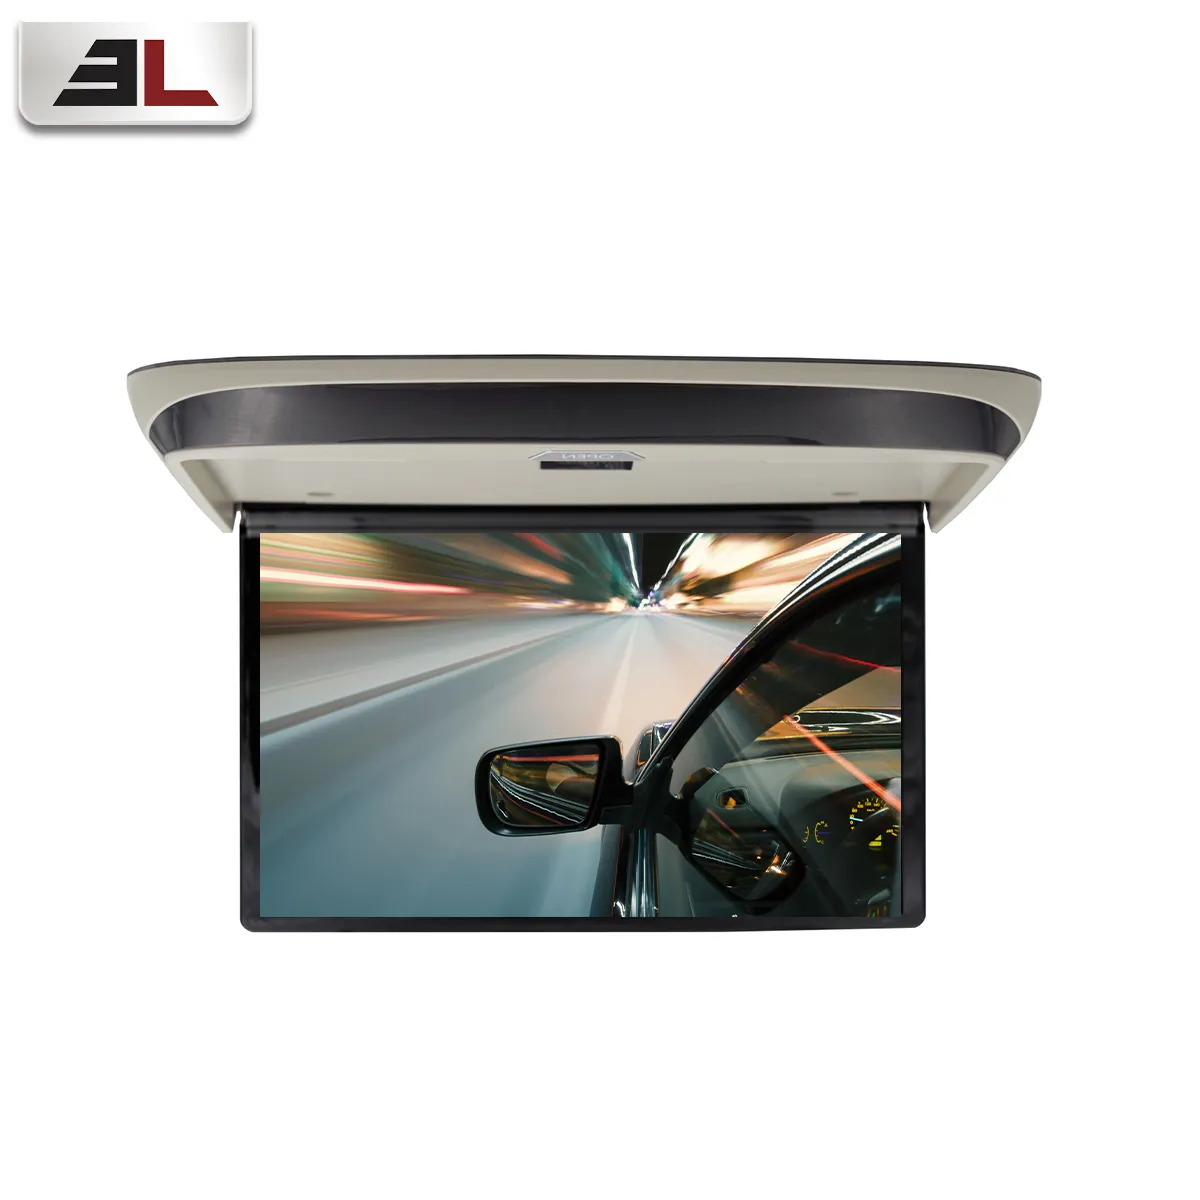 Universal 13,3 Zoll Android Dach Auto TV schlank Flip Down IPS-Bildschirm Dach montage Auto/Bus/Schiff Decke Overhead Dach monitor